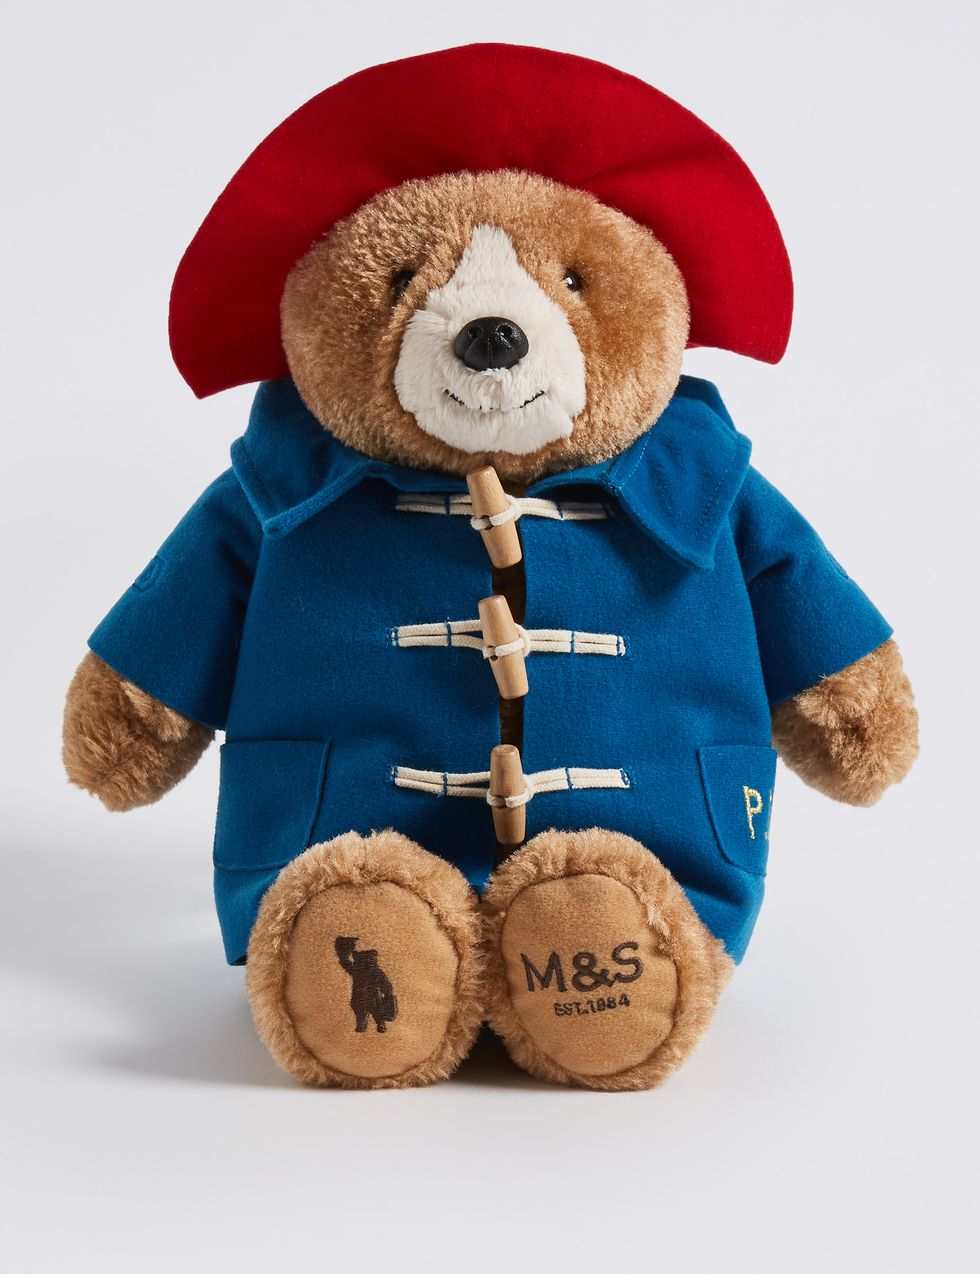 Stuffed toy, Teddy bear, Toy, Plush, Outerwear, Bear, Child, 